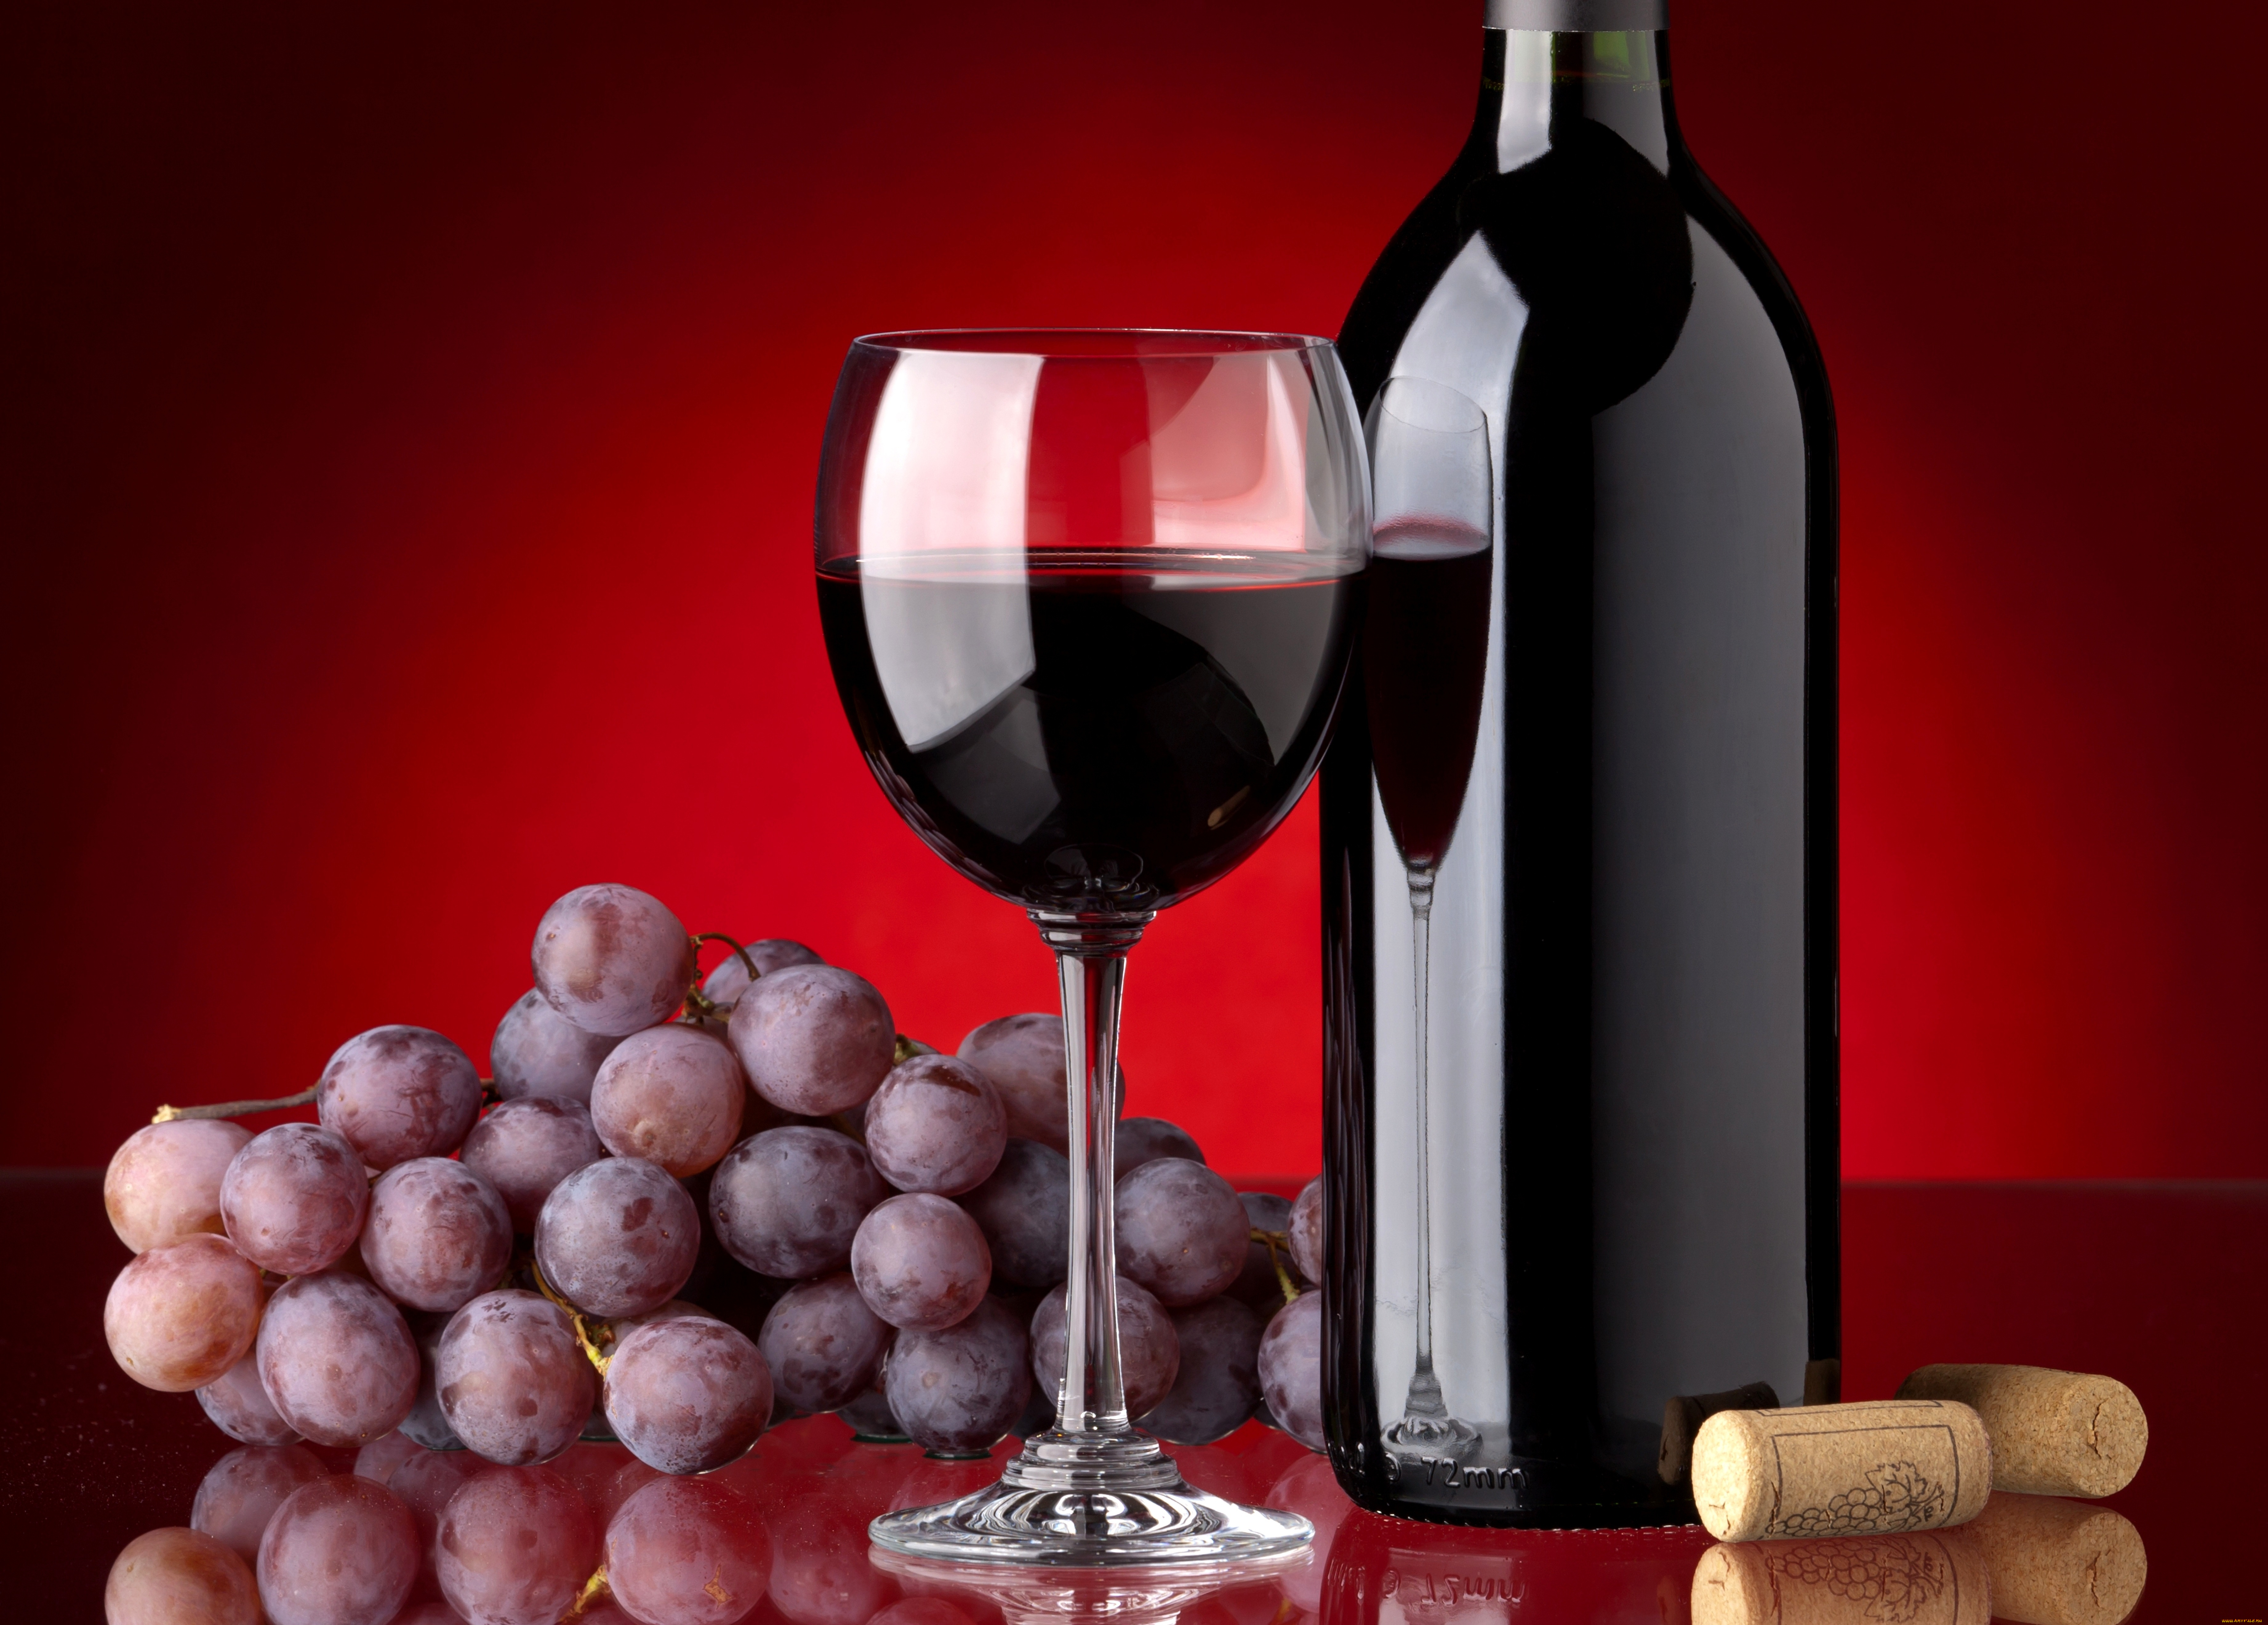 Картинку вине. Красное вино. Бутылка вина. Бутыль для вина. Бокал красного вина.